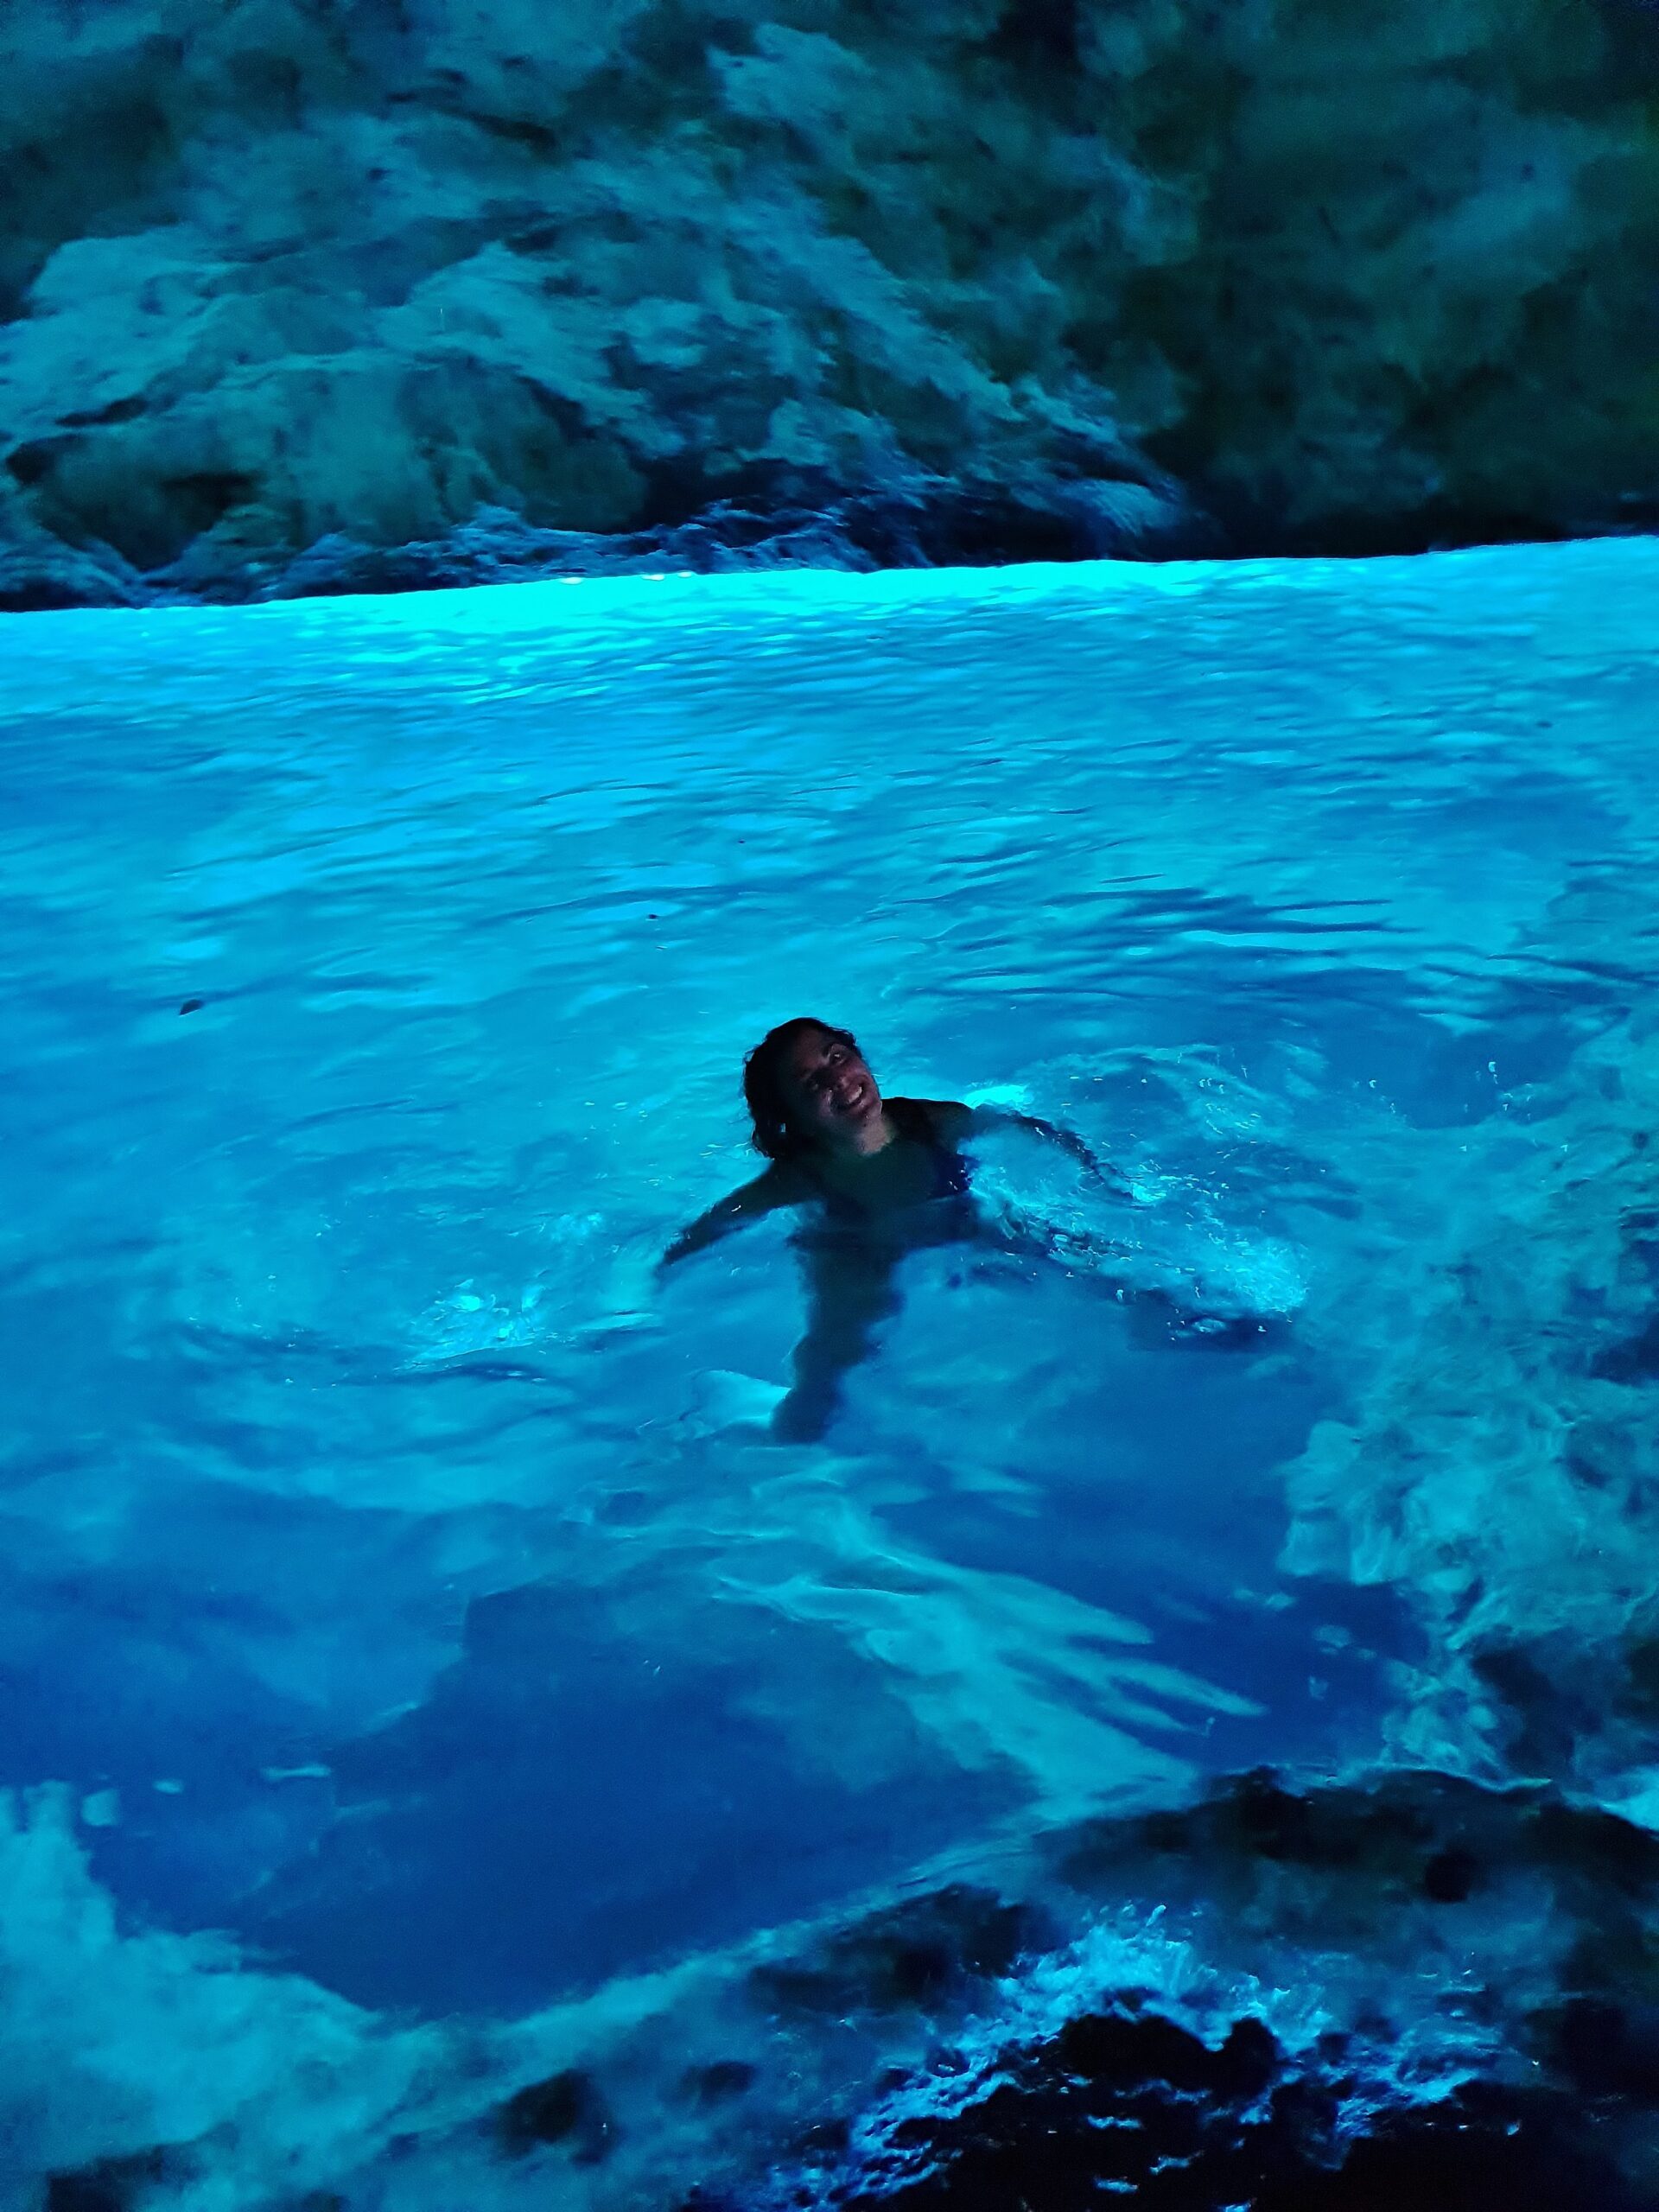 Carlotta mentre fa il bagno nella grotta verde, una delle grotte marine del Salento sulla Costa Adriatica, dove l'acqua assume un colore azzurro chiaro